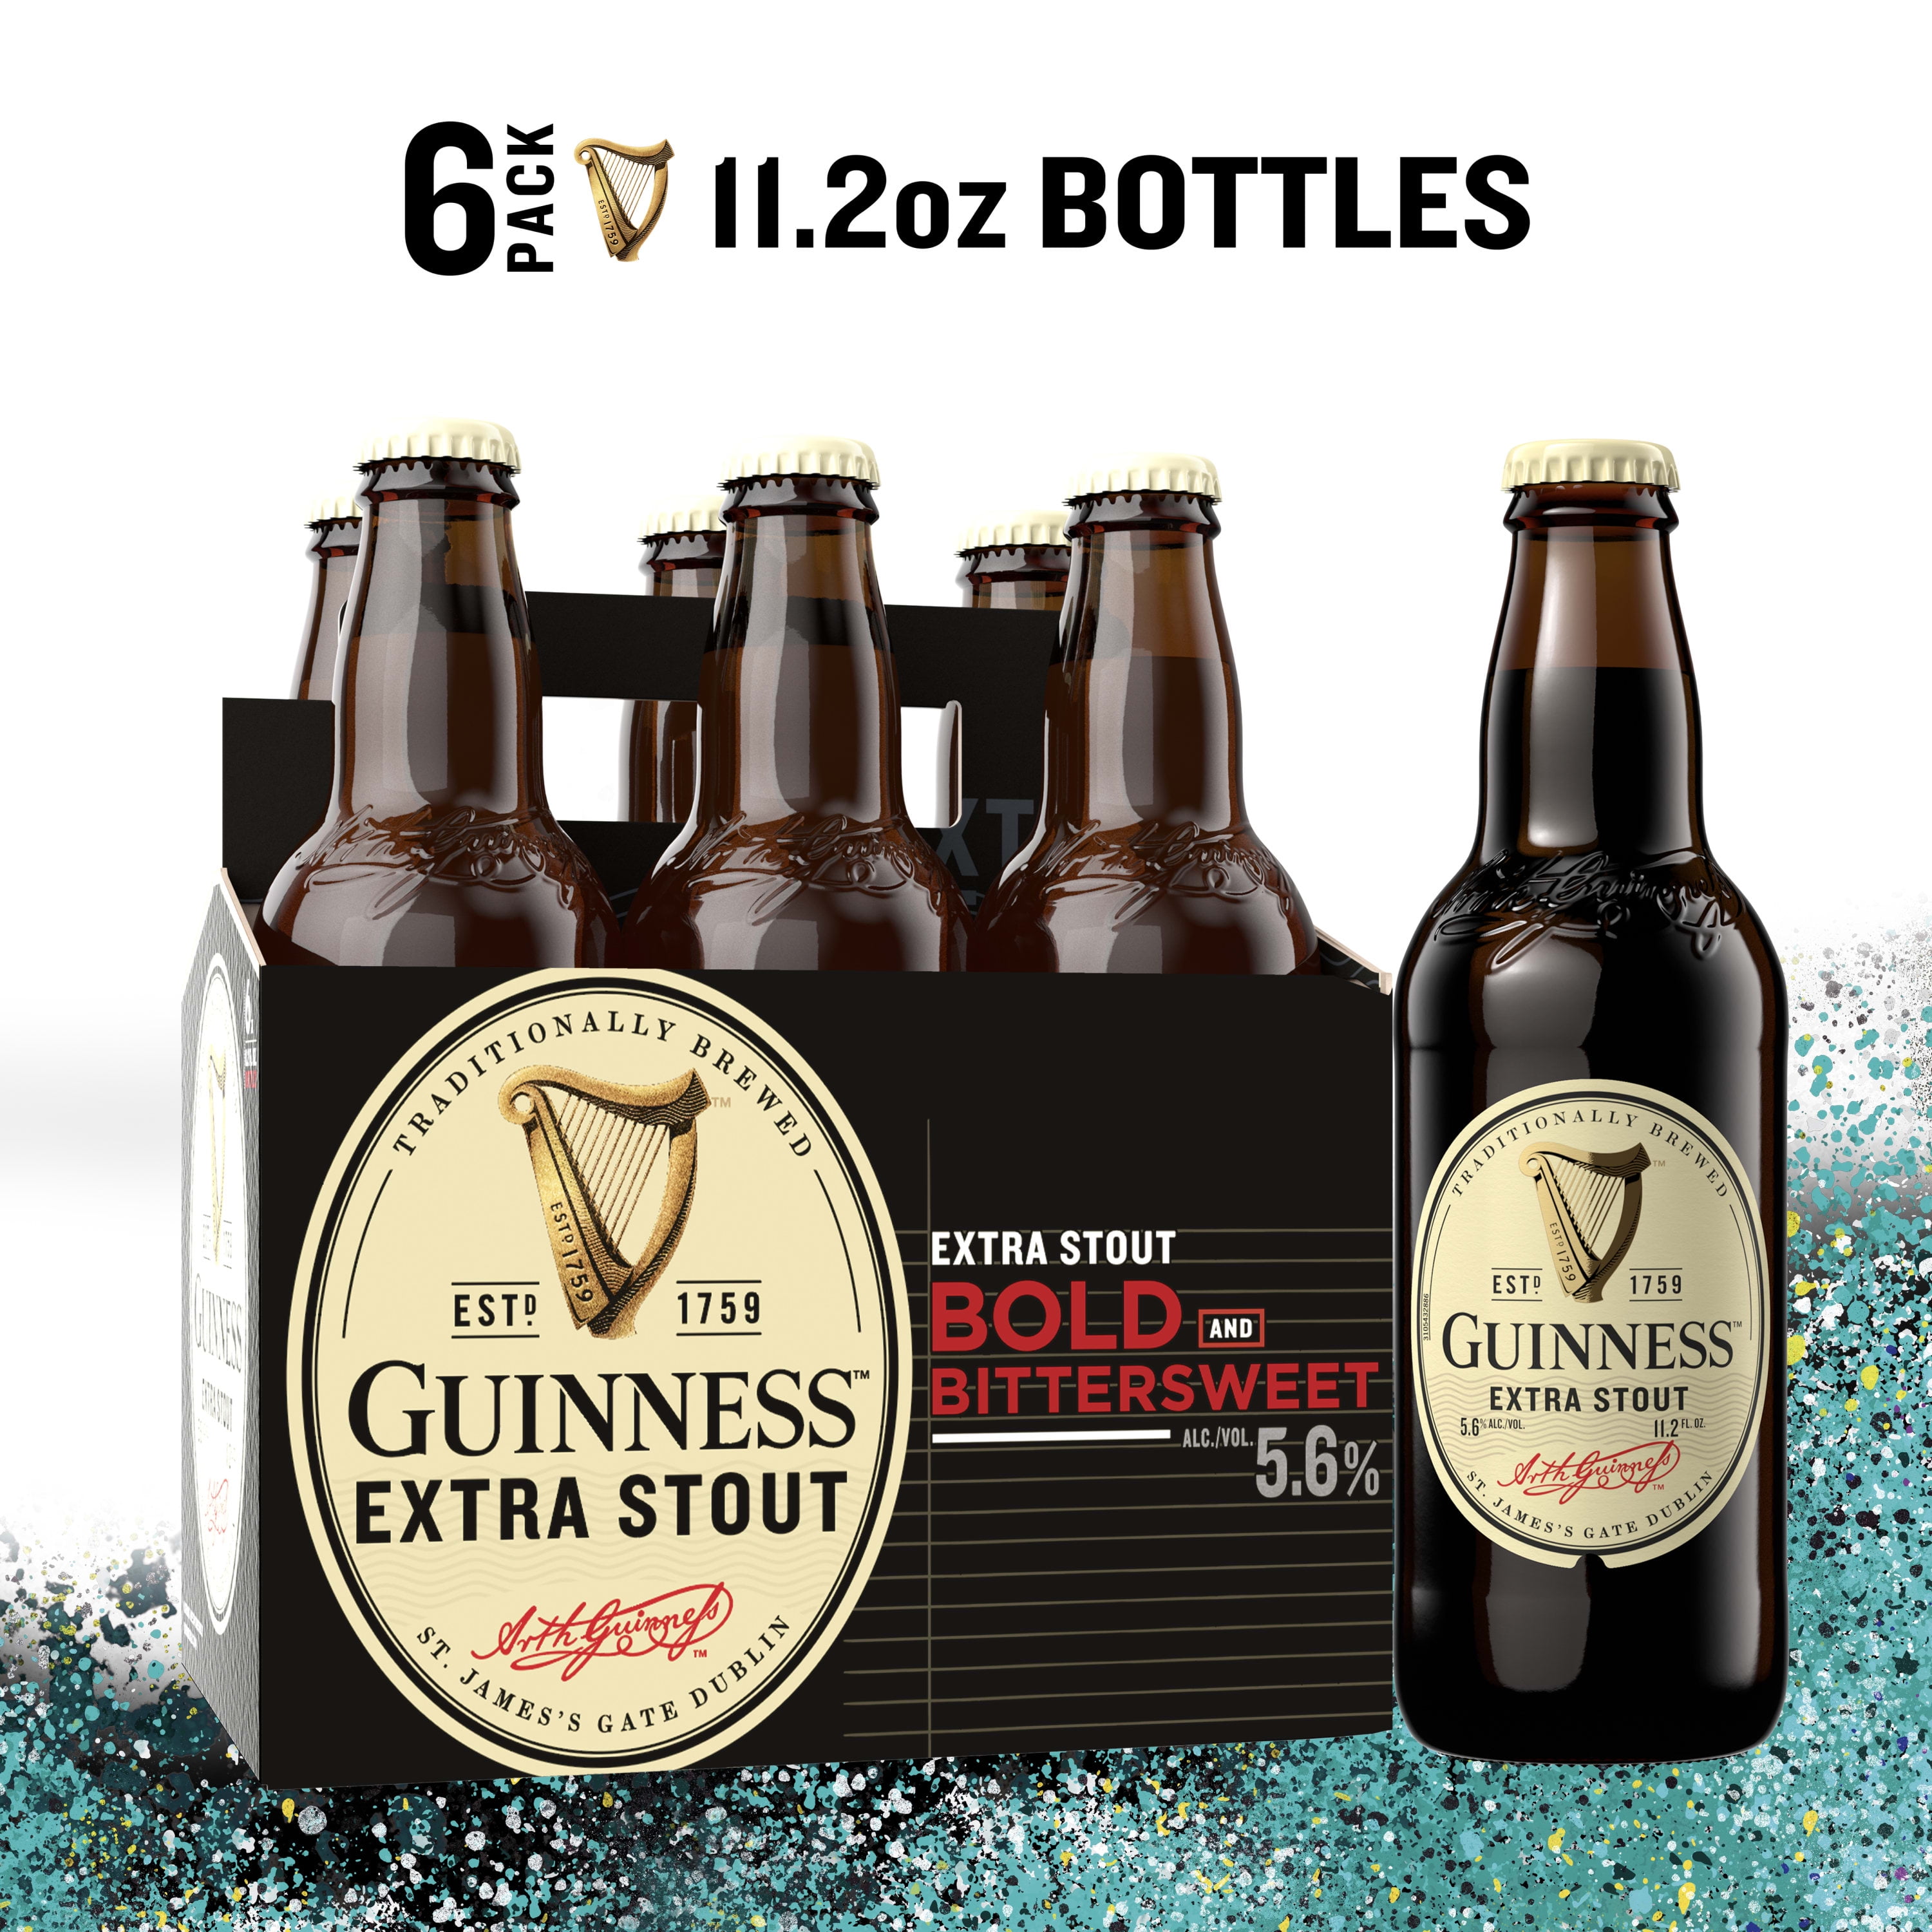 Guinness Extra Stout Beer 6pk 112oz Bottles 56 Abv 